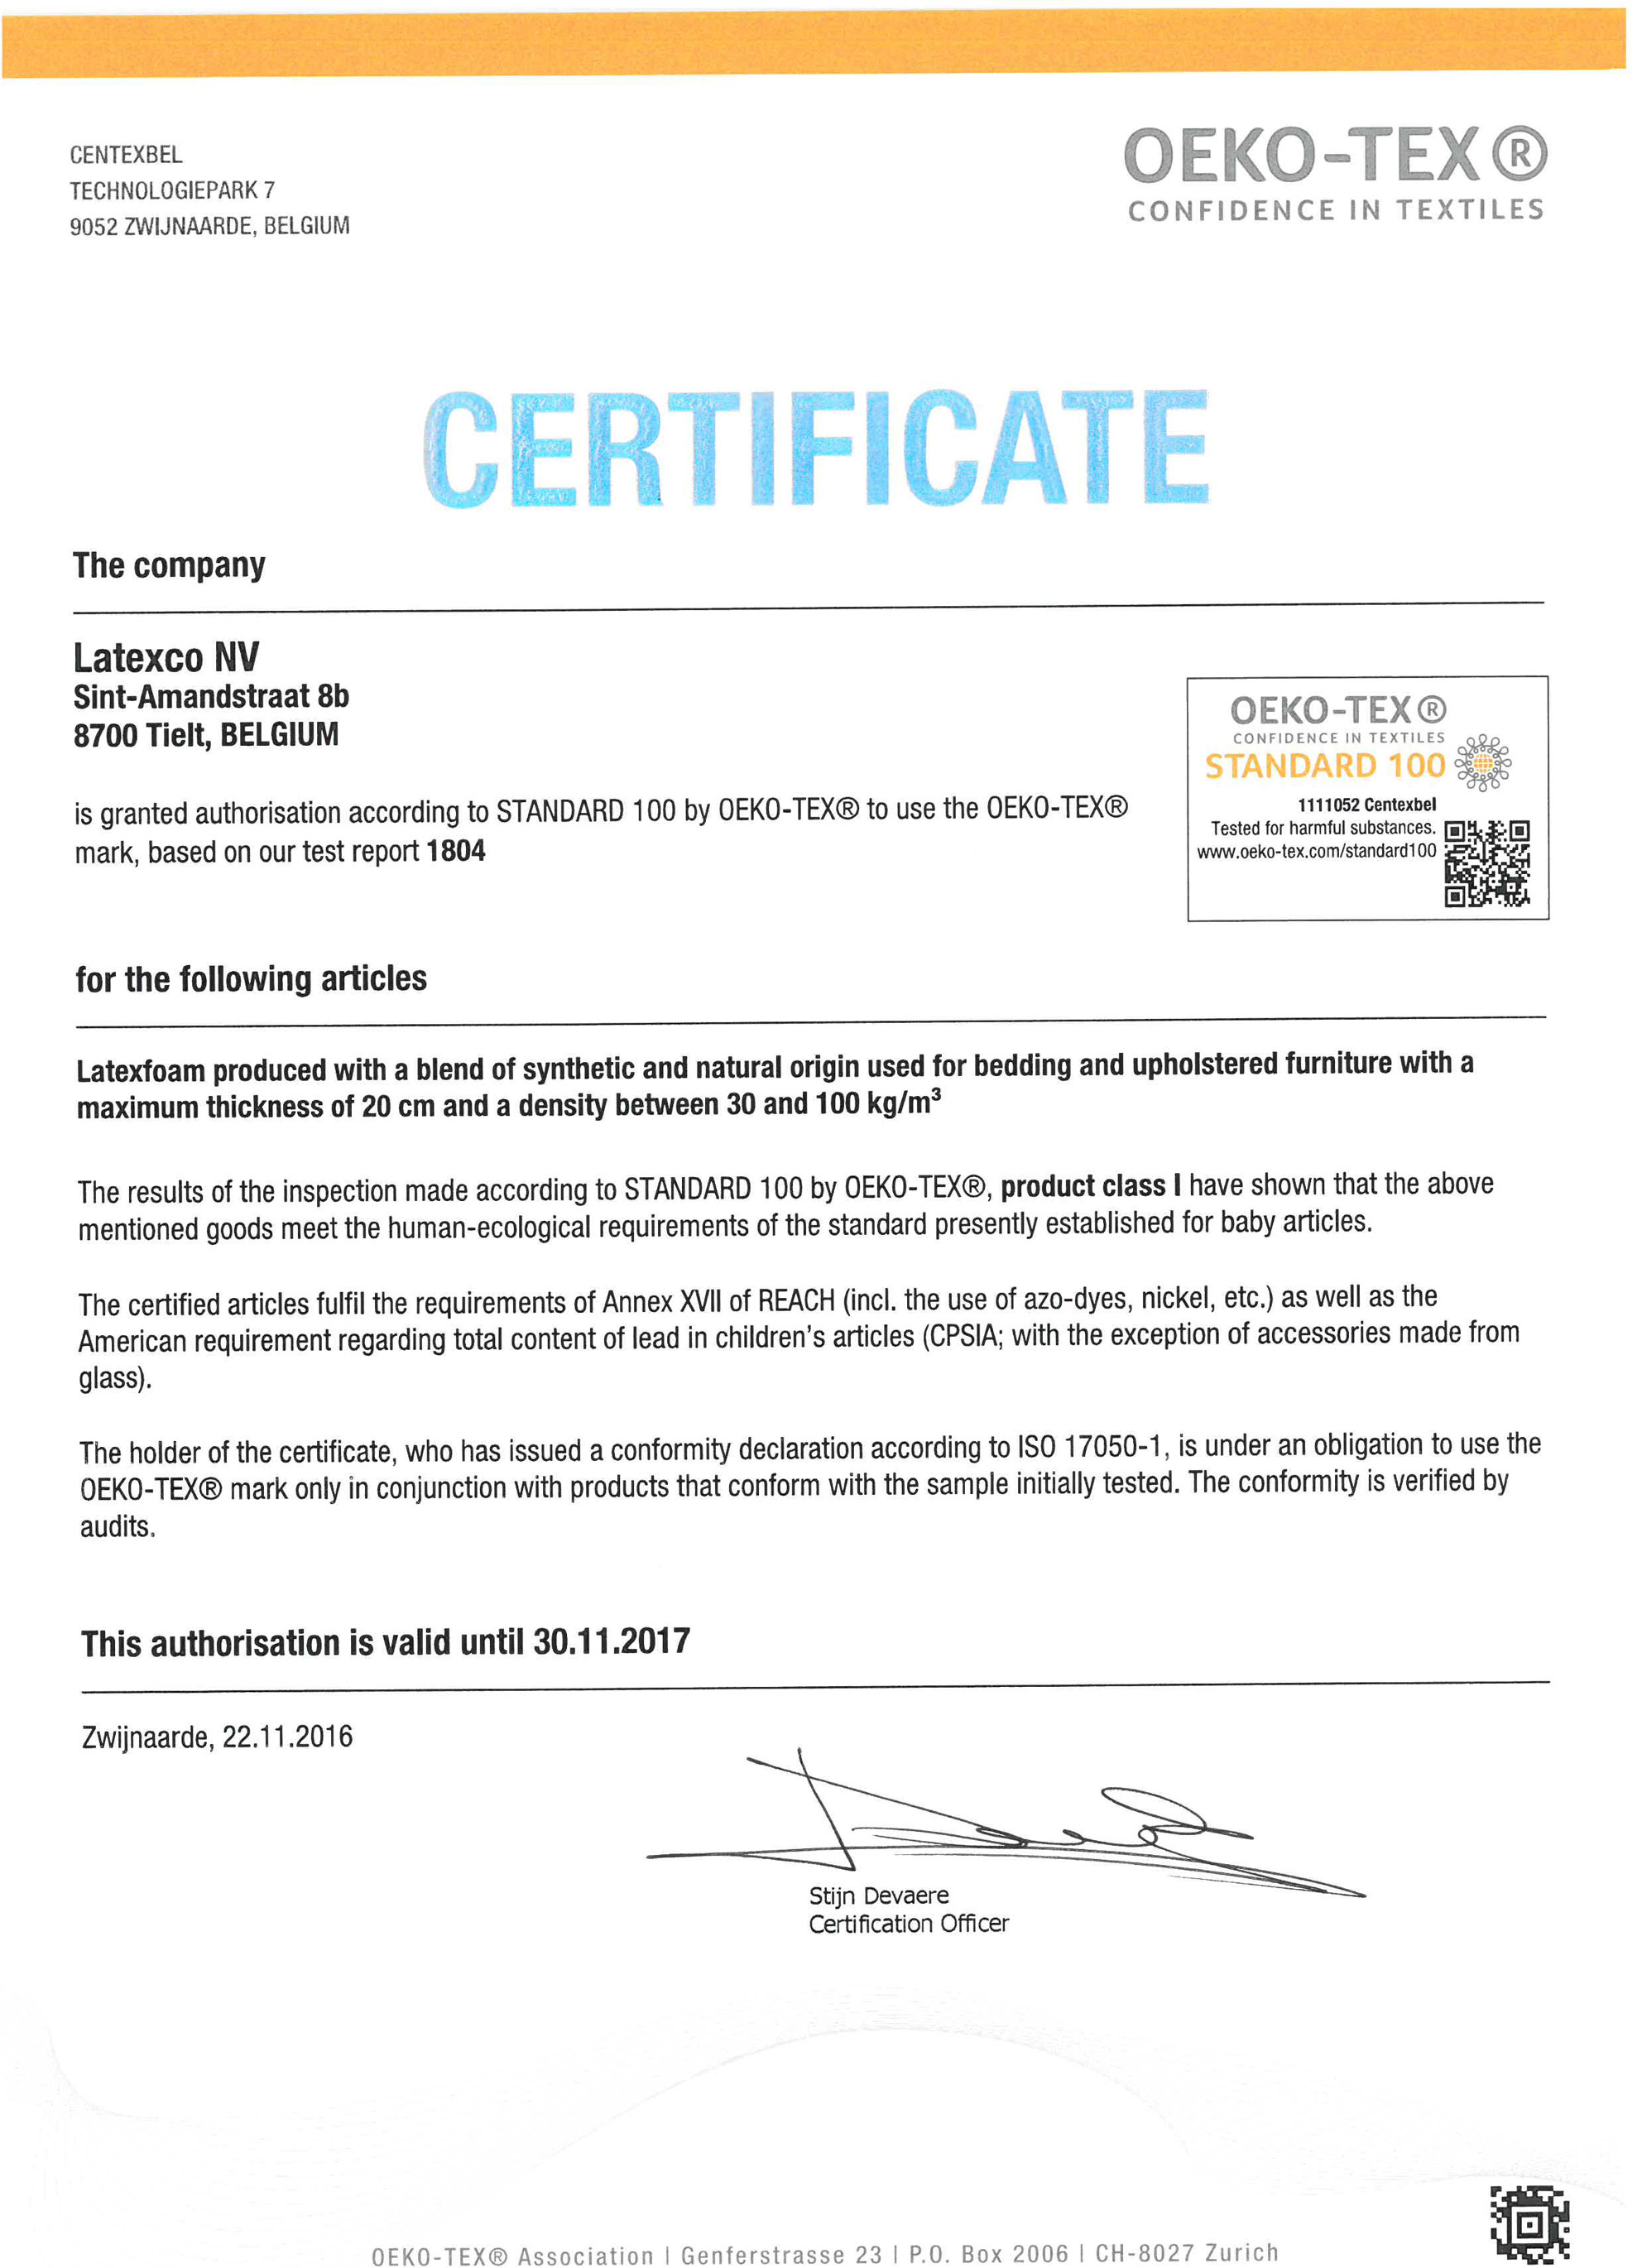 Certificat oeko -tex 2017